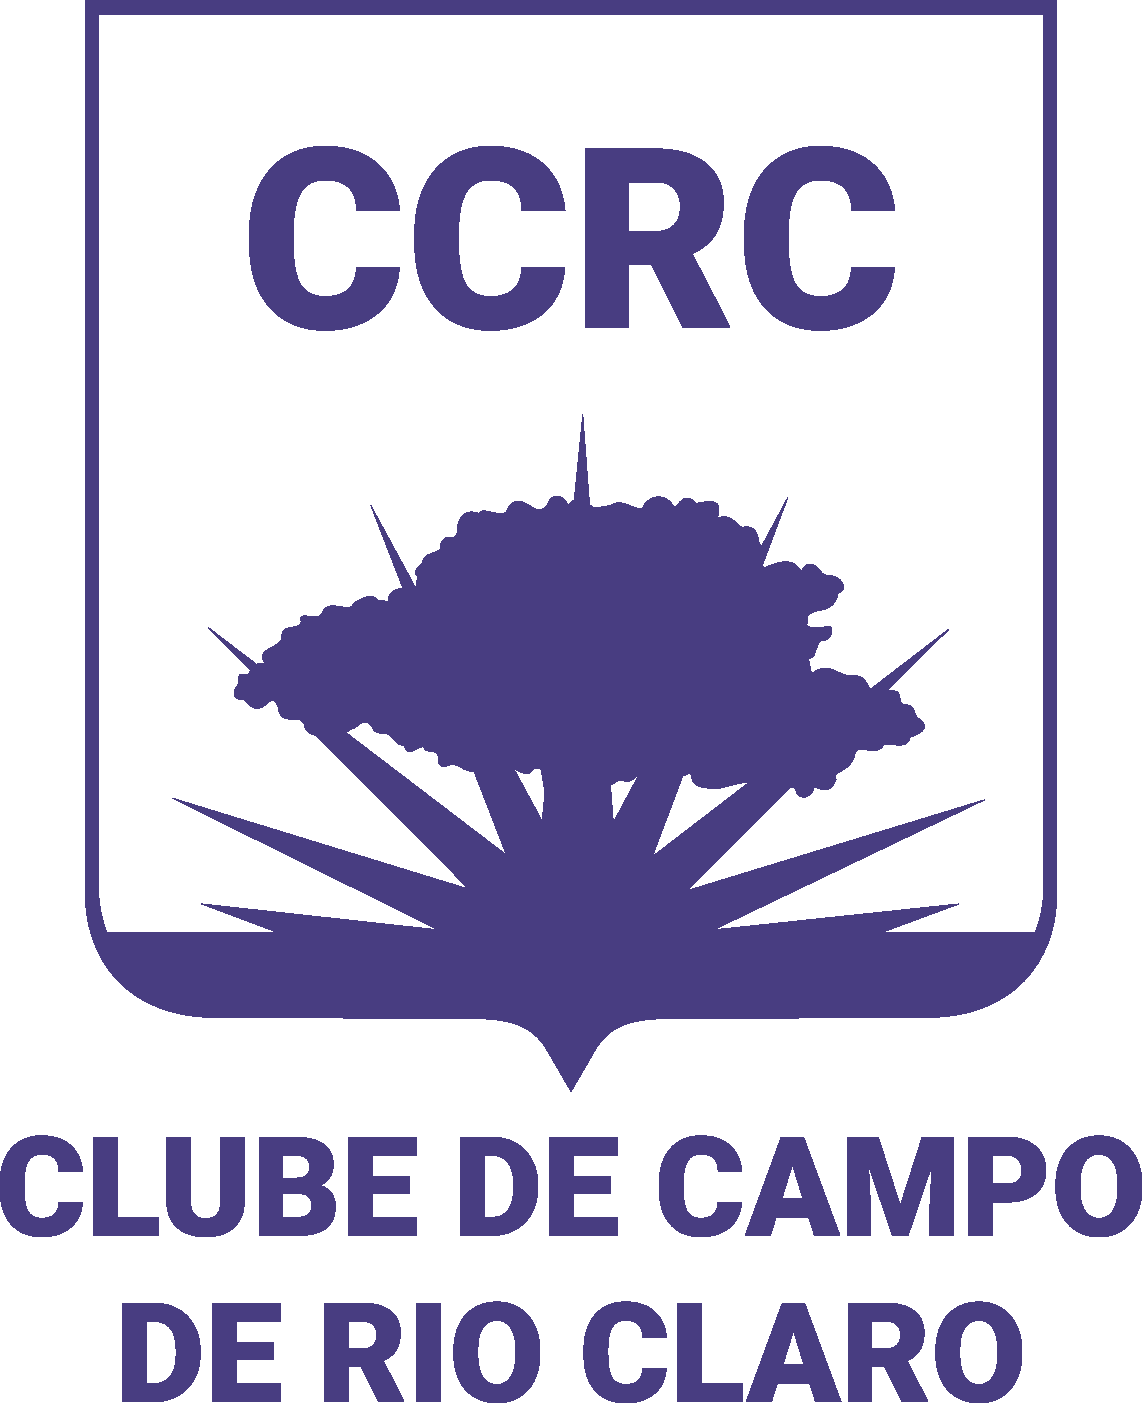 Clube de Xadrez de Rio Claro